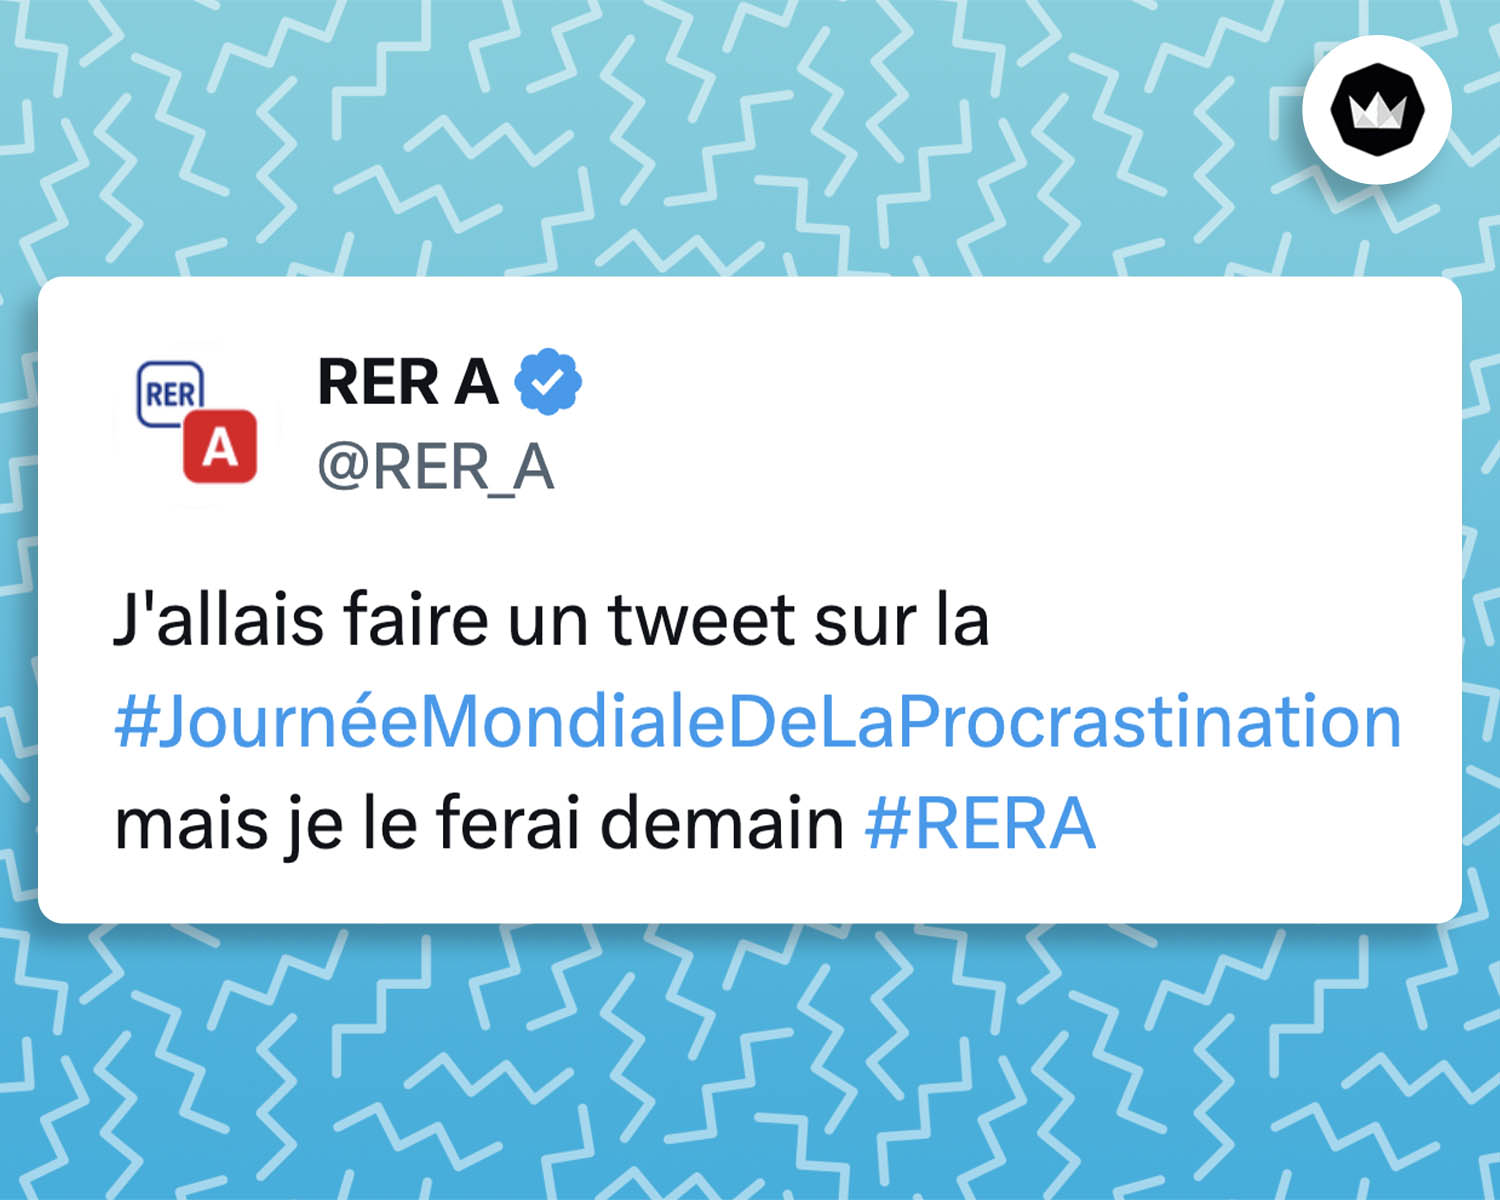 tweet de @RER_A :
J'allais faire un tweet sur la #JournéeMondialeDeLaProcrastination mais je le ferai demain #RERA